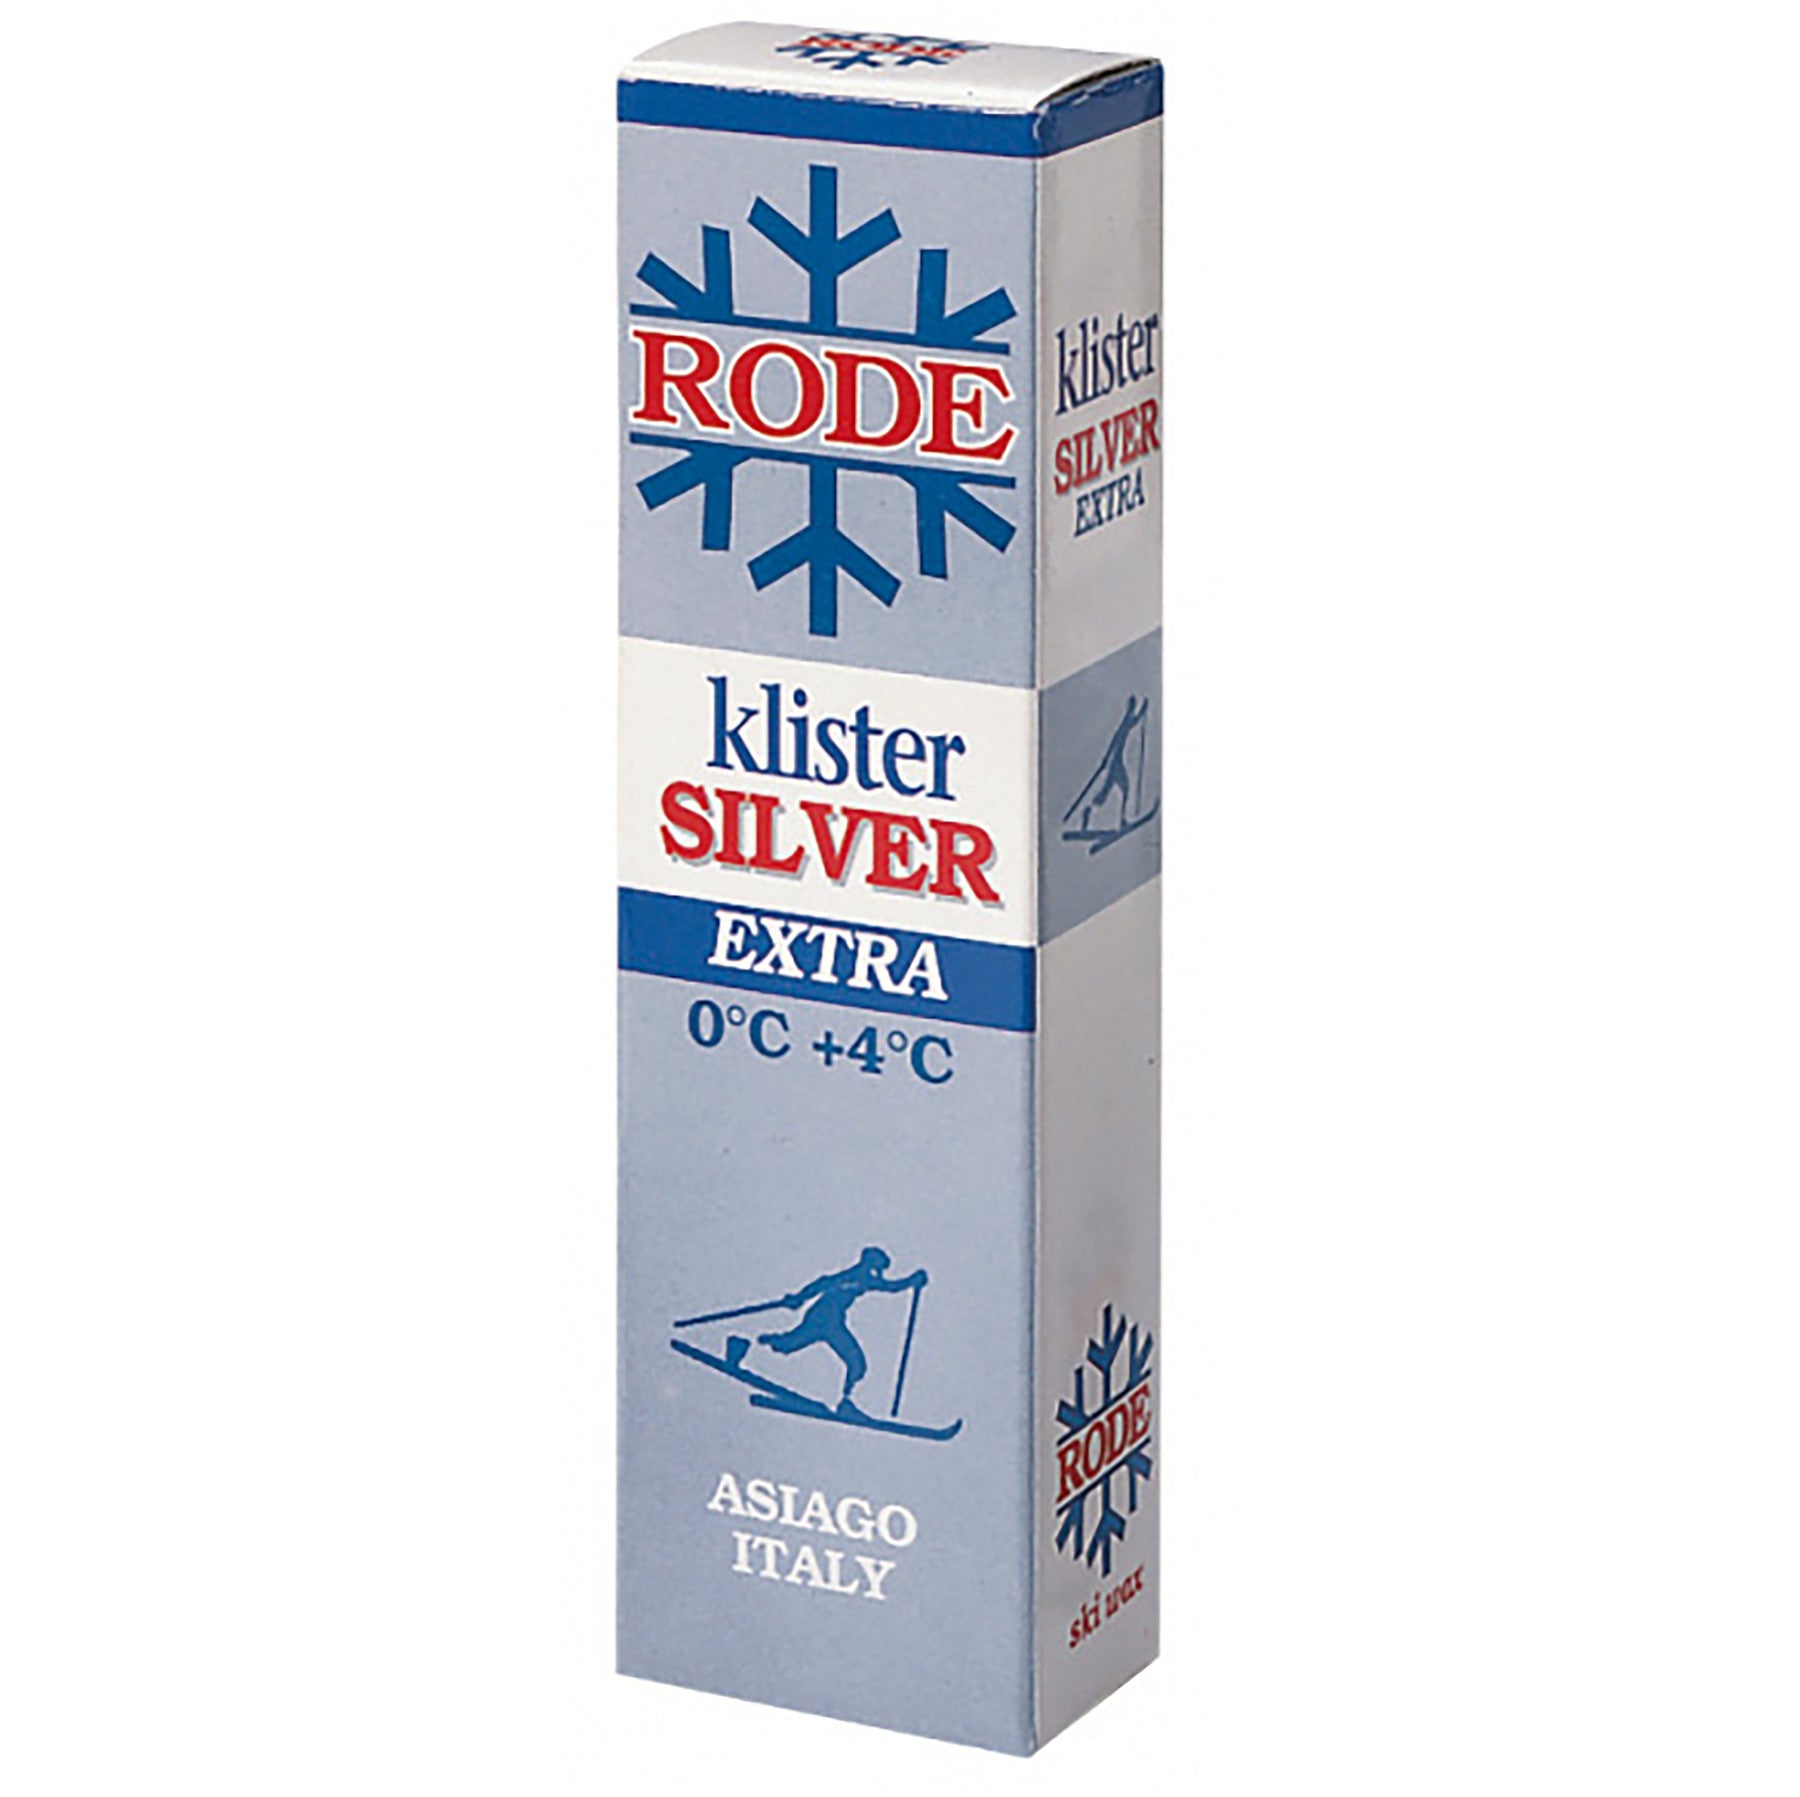 Buy silver-extra-k52 Rode Klister 60g tube